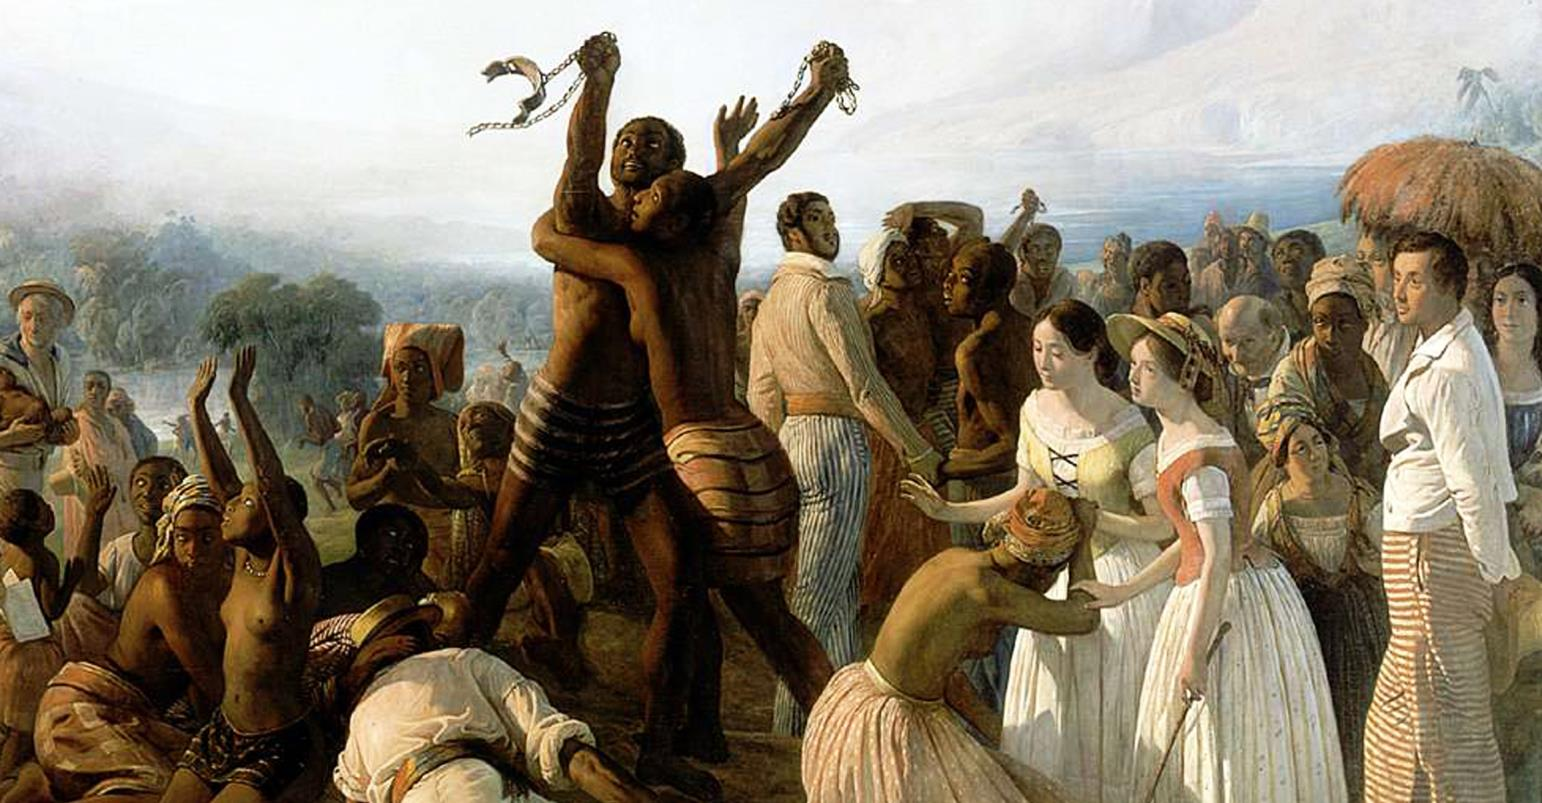 PRECEDENTE HISTÓRICO O último país do mundo ocidental a abolir a escravidão (13